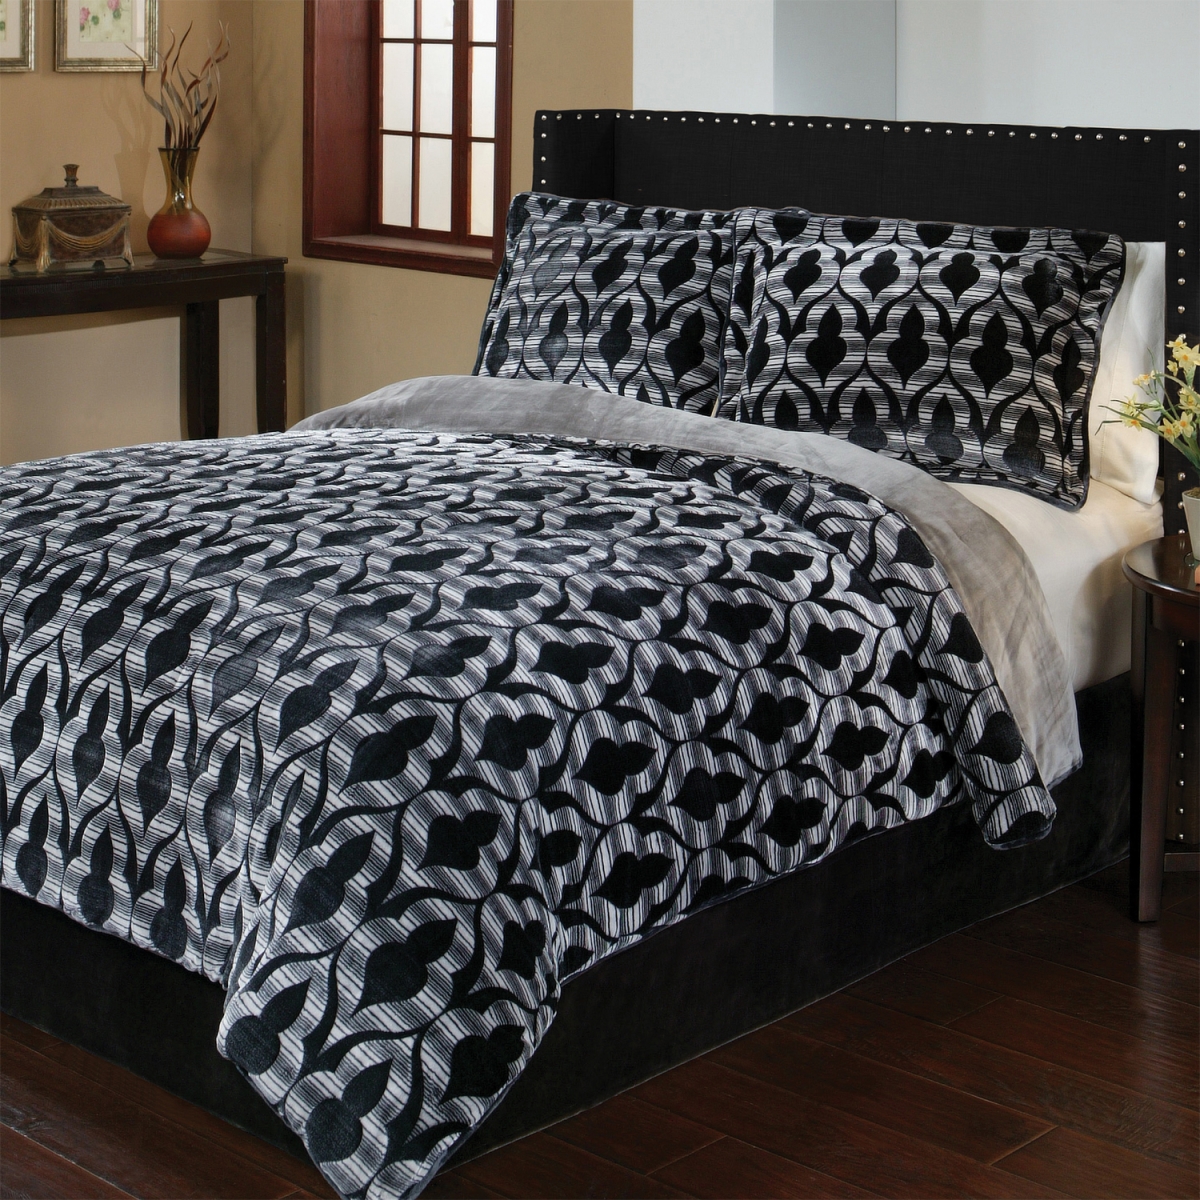 C1409004-syk-blk 108 X 90 In. Reversible Merekesh Printed Velvet Plush Comforter Mini Set, Black - King